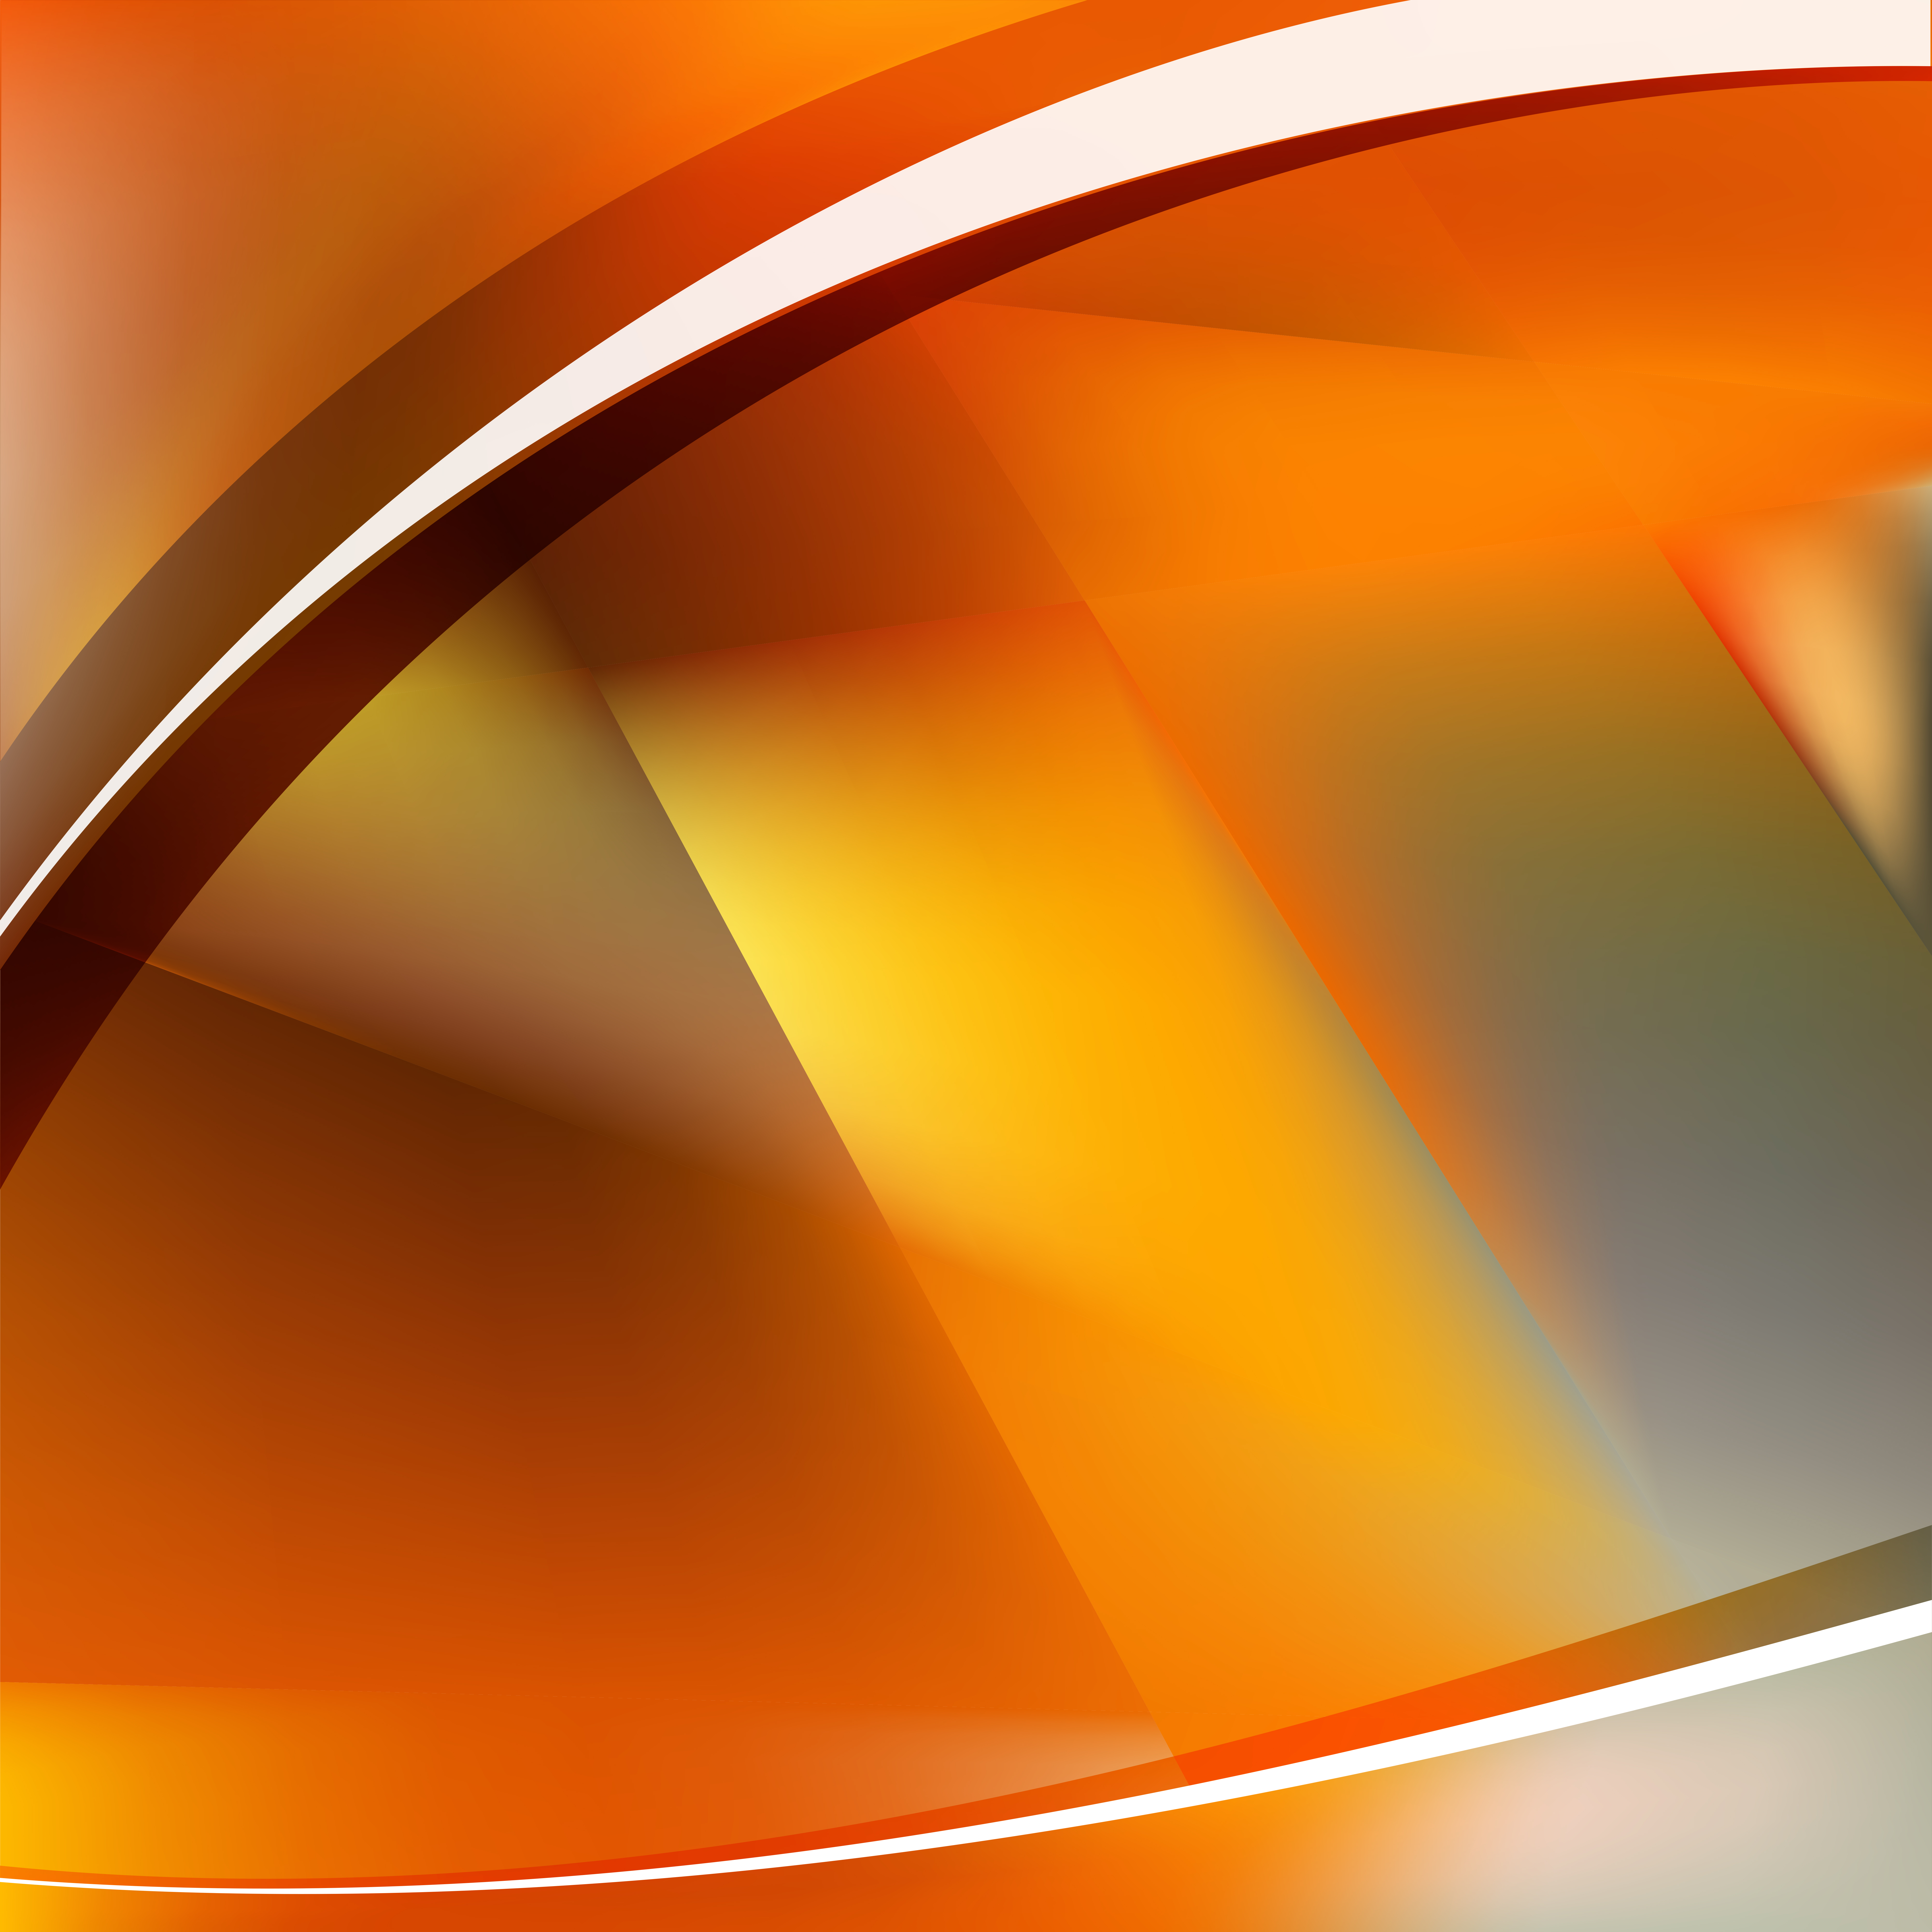 Orange Grey Background: Một mảng chuyển động đầy tự tin với gam màu cam đậm, kết hợp tinh tế với màu xám, tạo ra sự đối lập rõ nét của một khung cảnh dành cho những người yêu thích sự sáng tạo, đồng thời tỏa sáng và đầy năng lượng.